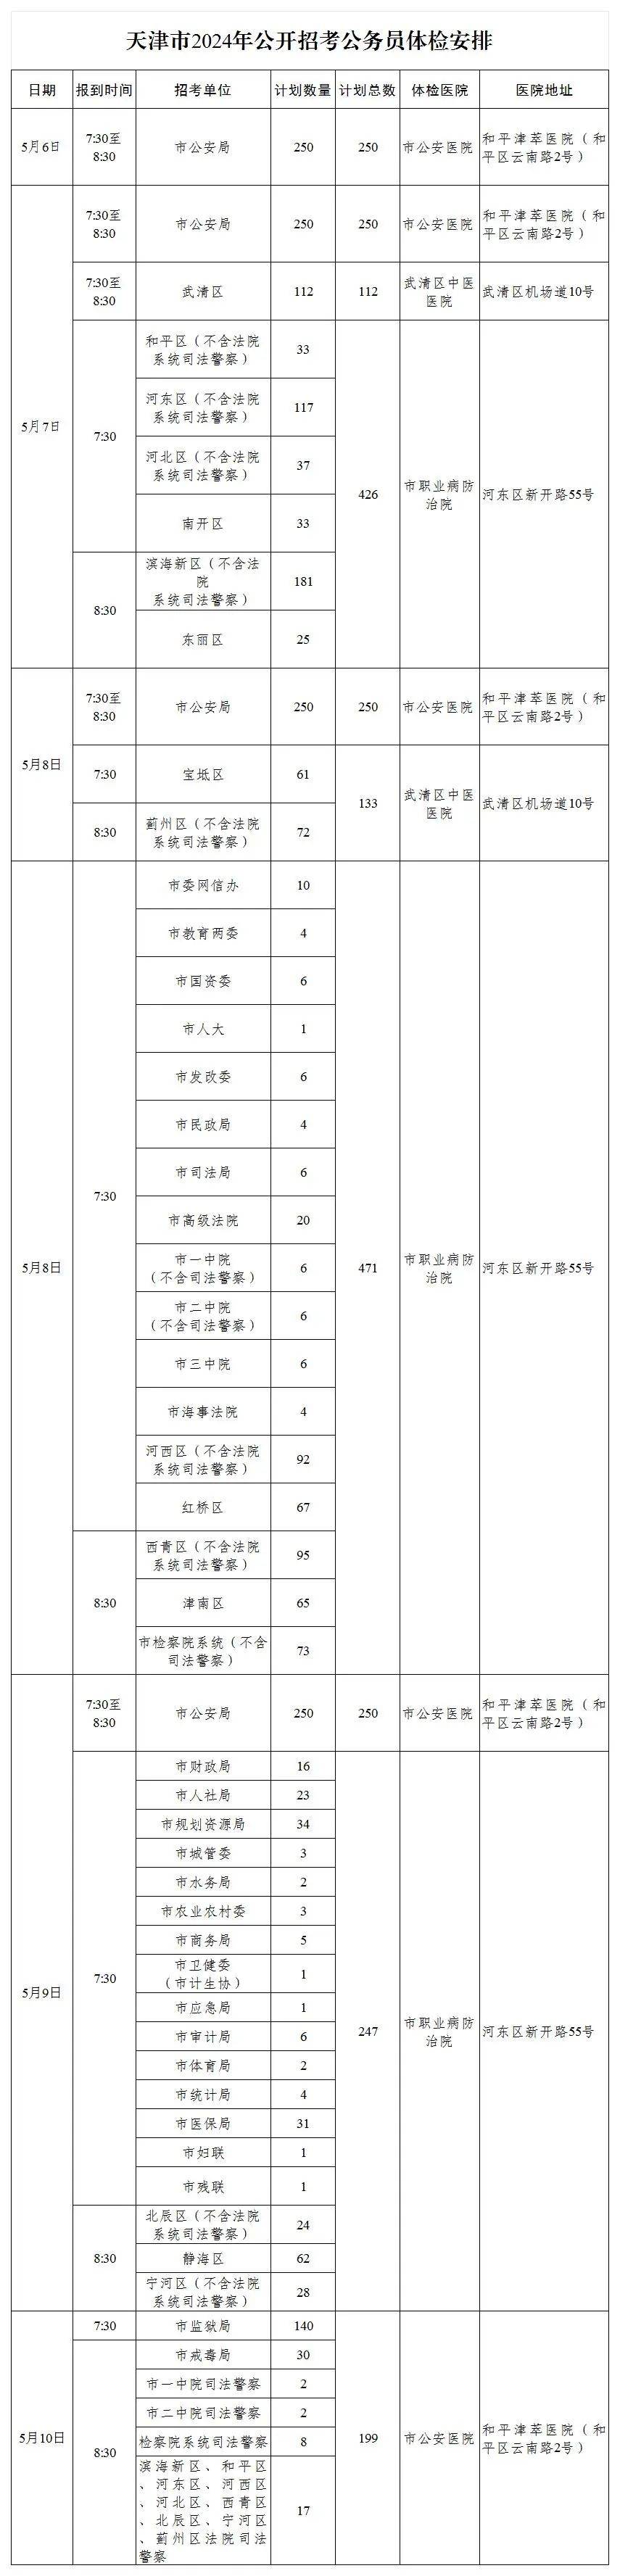 来源：天津市人事考试网上报名公共服务平台